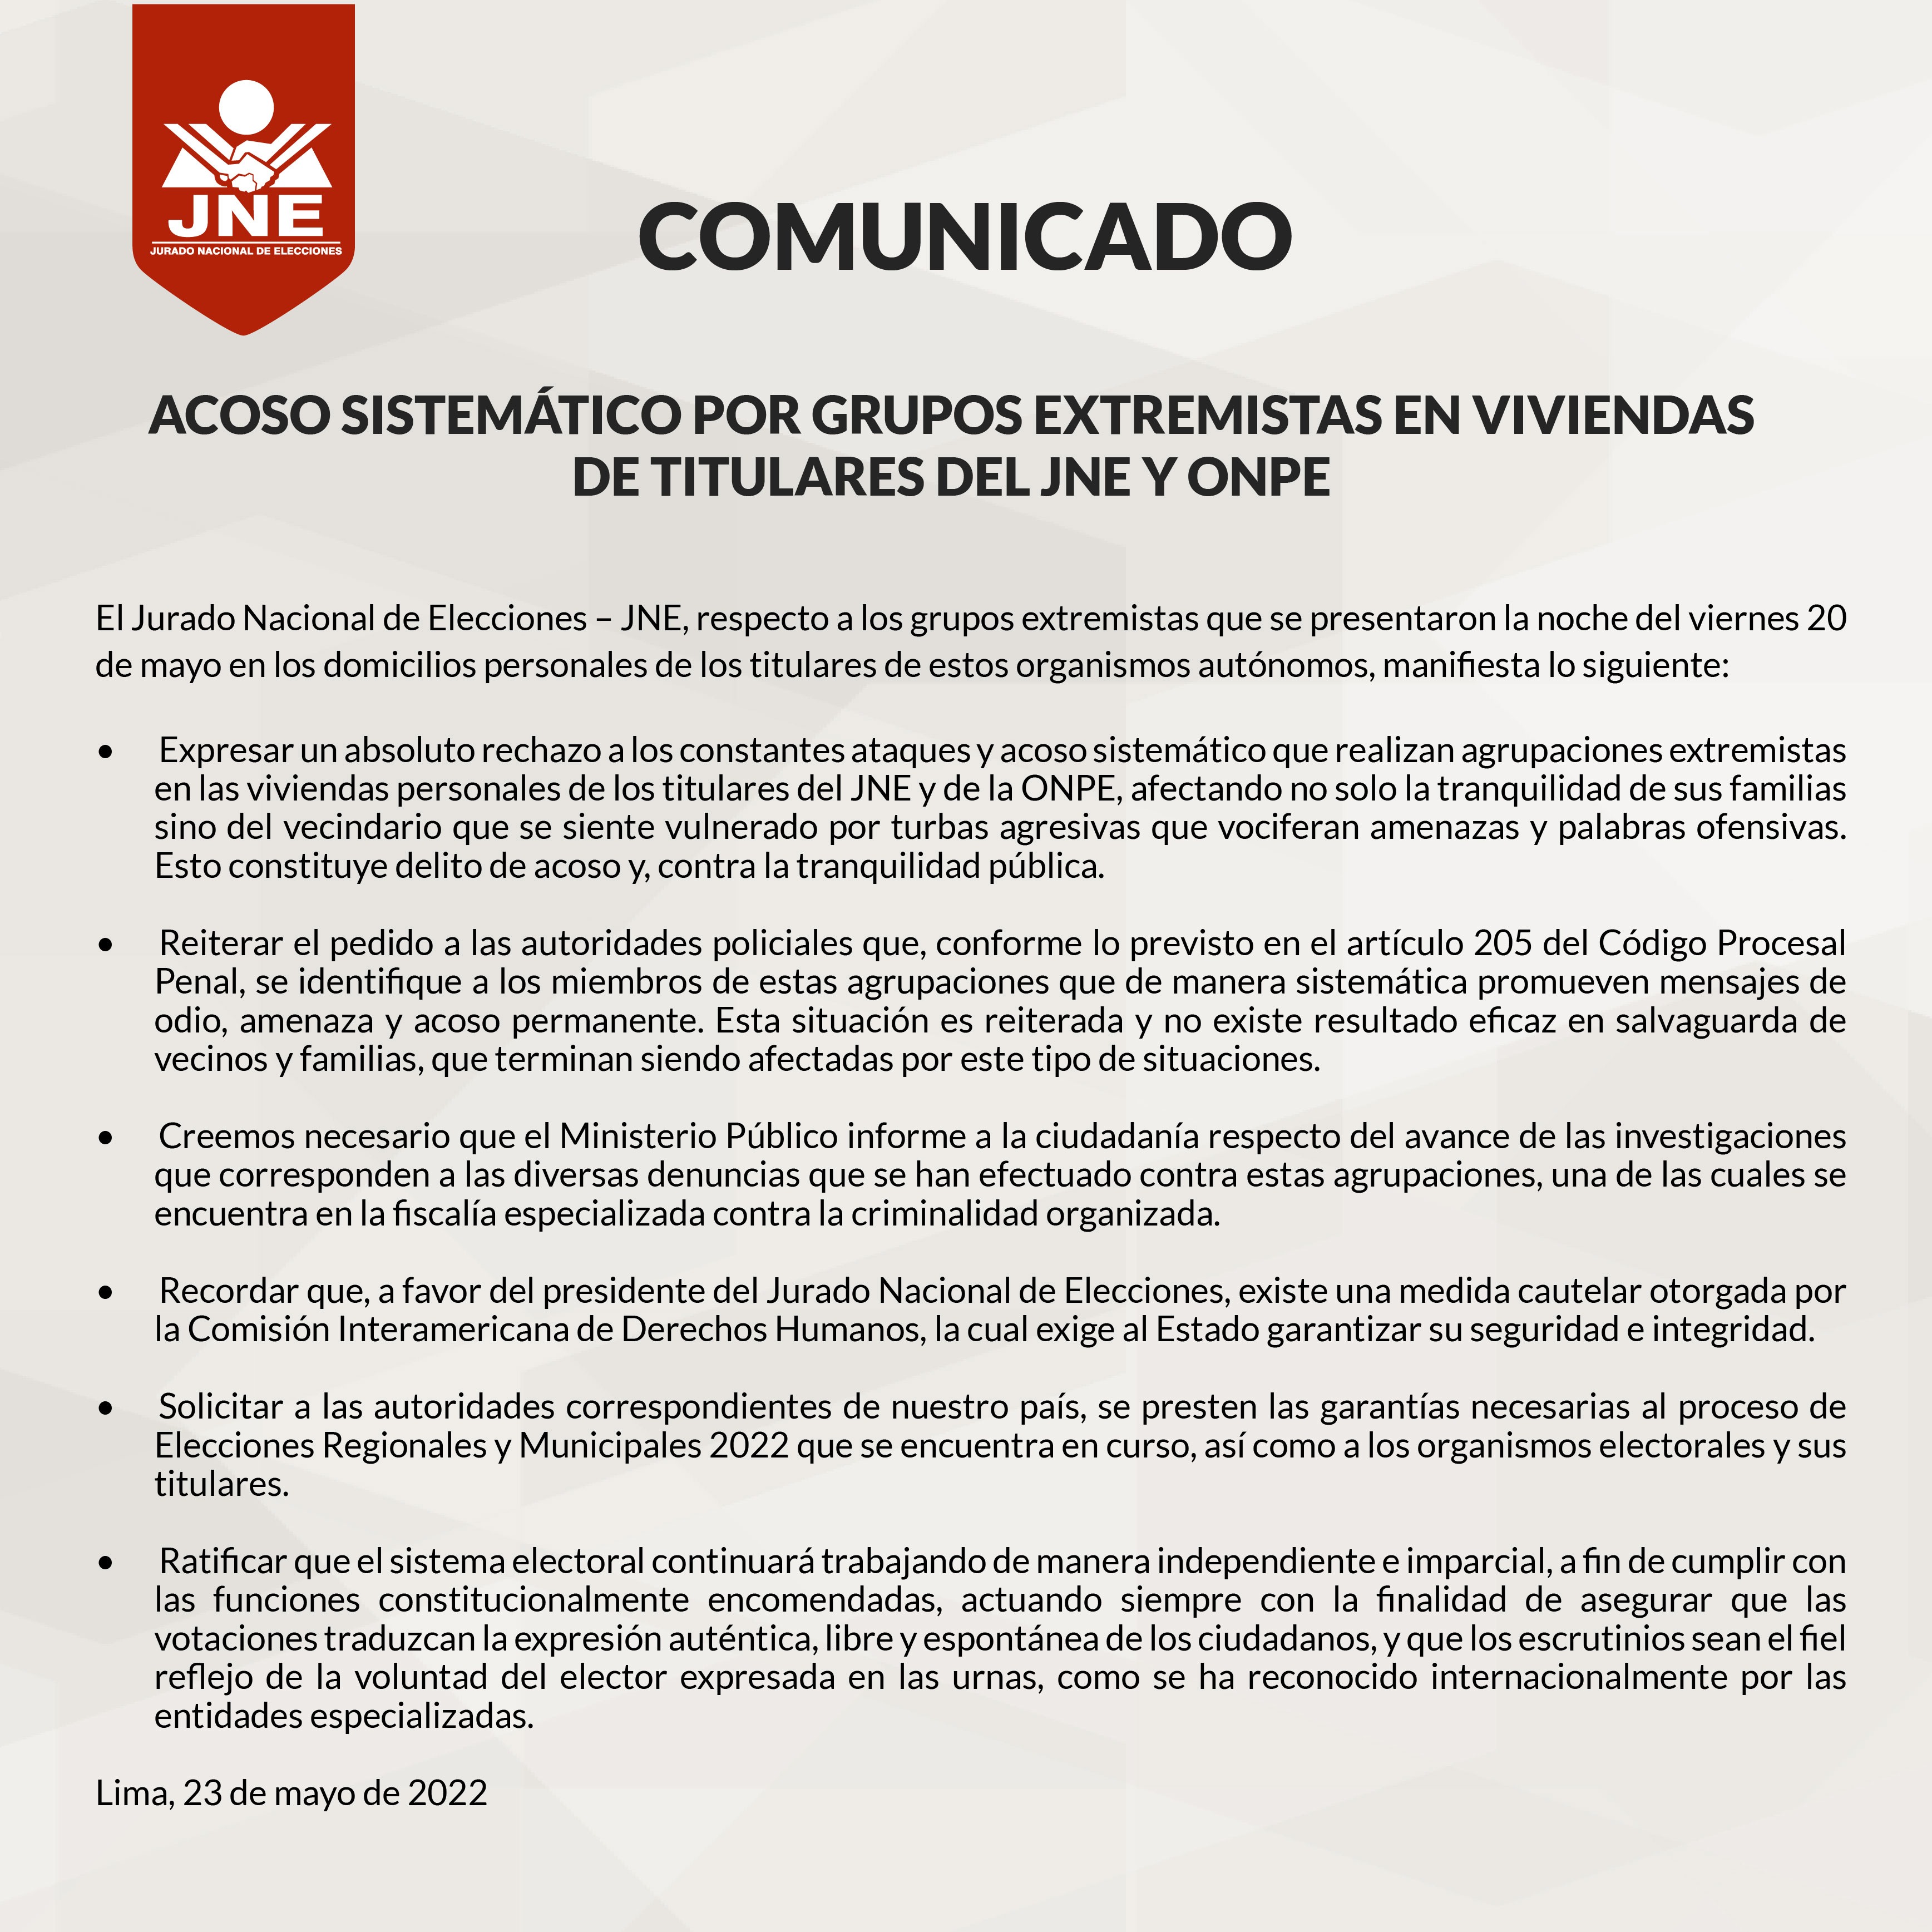 JNE rechaza ataques y acoso sistemático contra Jorge Luis Salas Arenas y titular de la ONPE